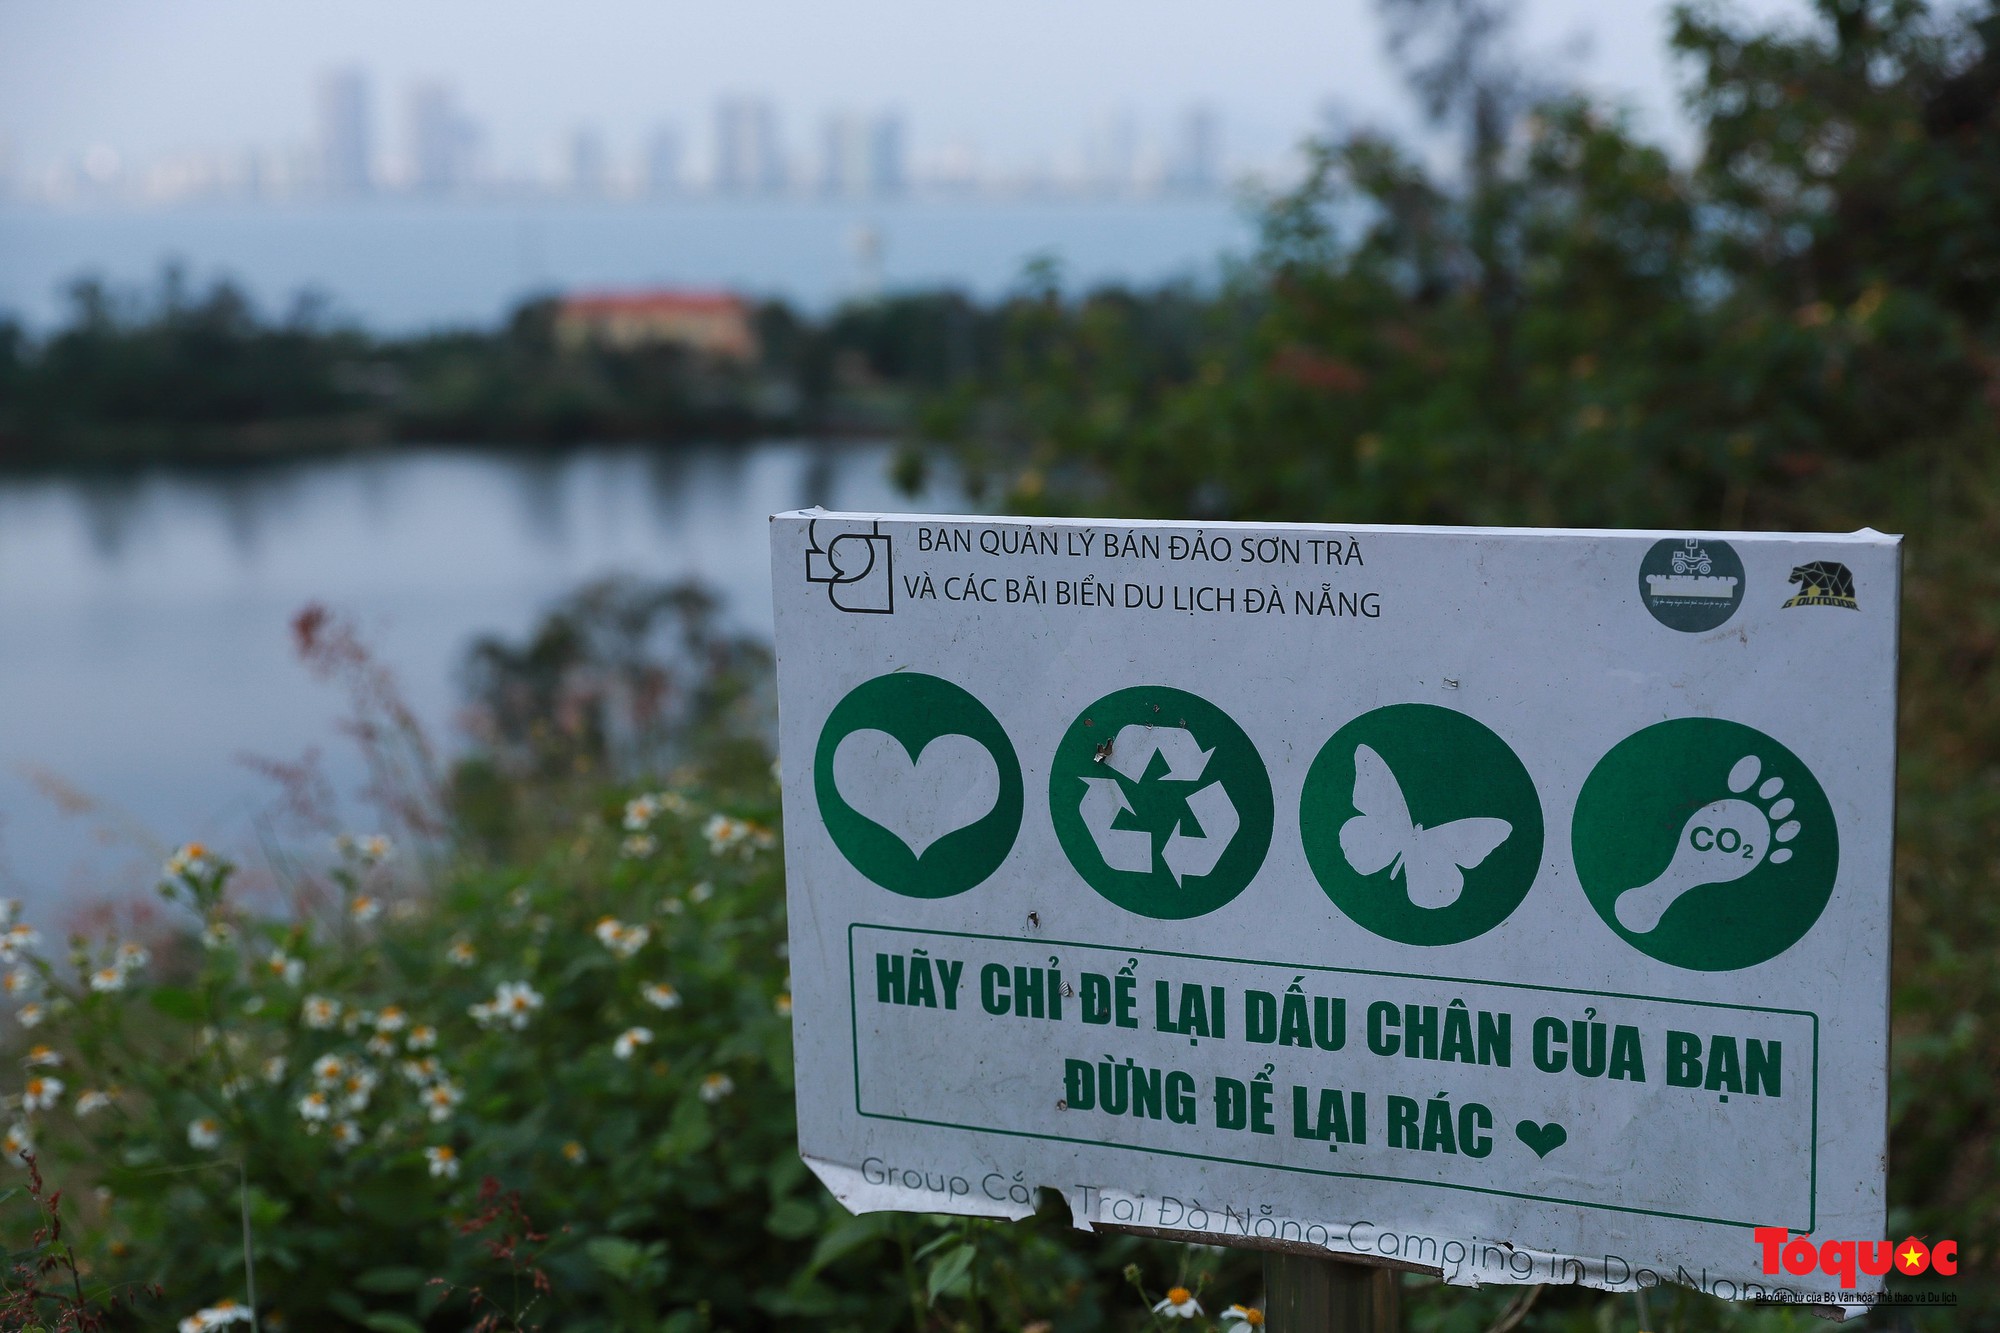 Gần 1.000 người nhặt rác làm đẹp bán đảo Sơn Trà và các bãi biển du lịch Đà Nẵng - Ảnh 5.